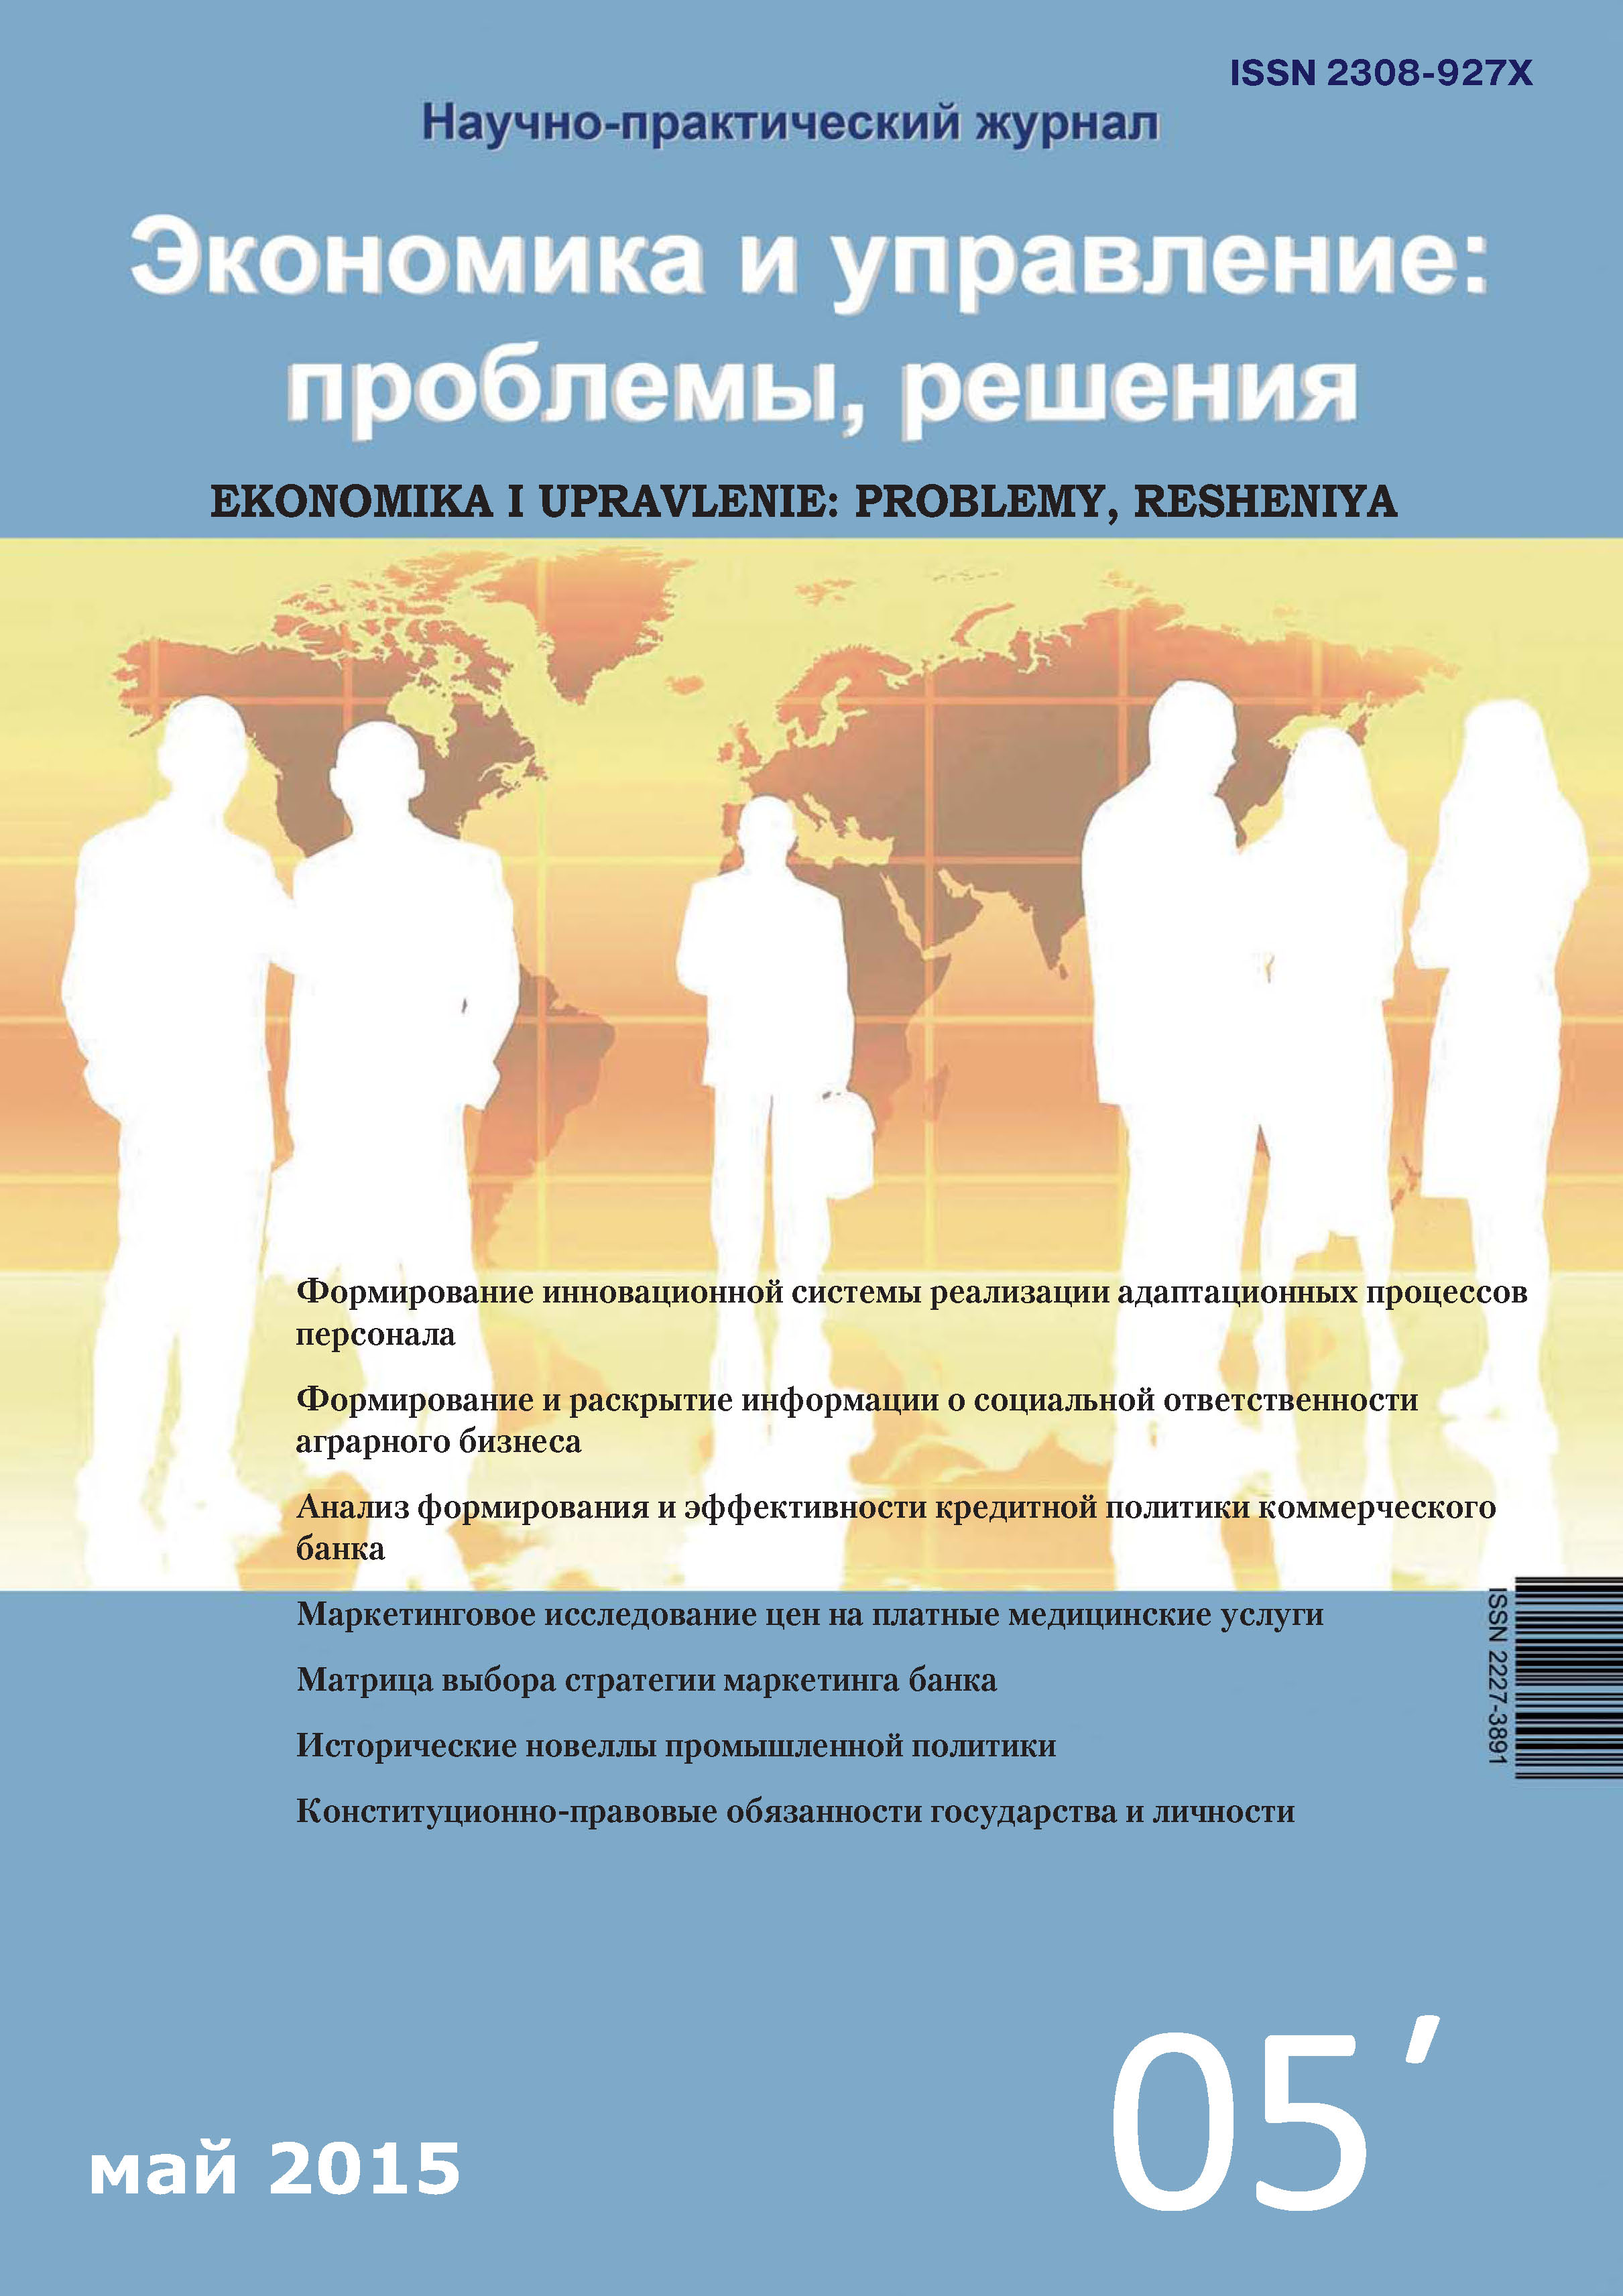 Экономика и управление: проблемы, решения №05/2015